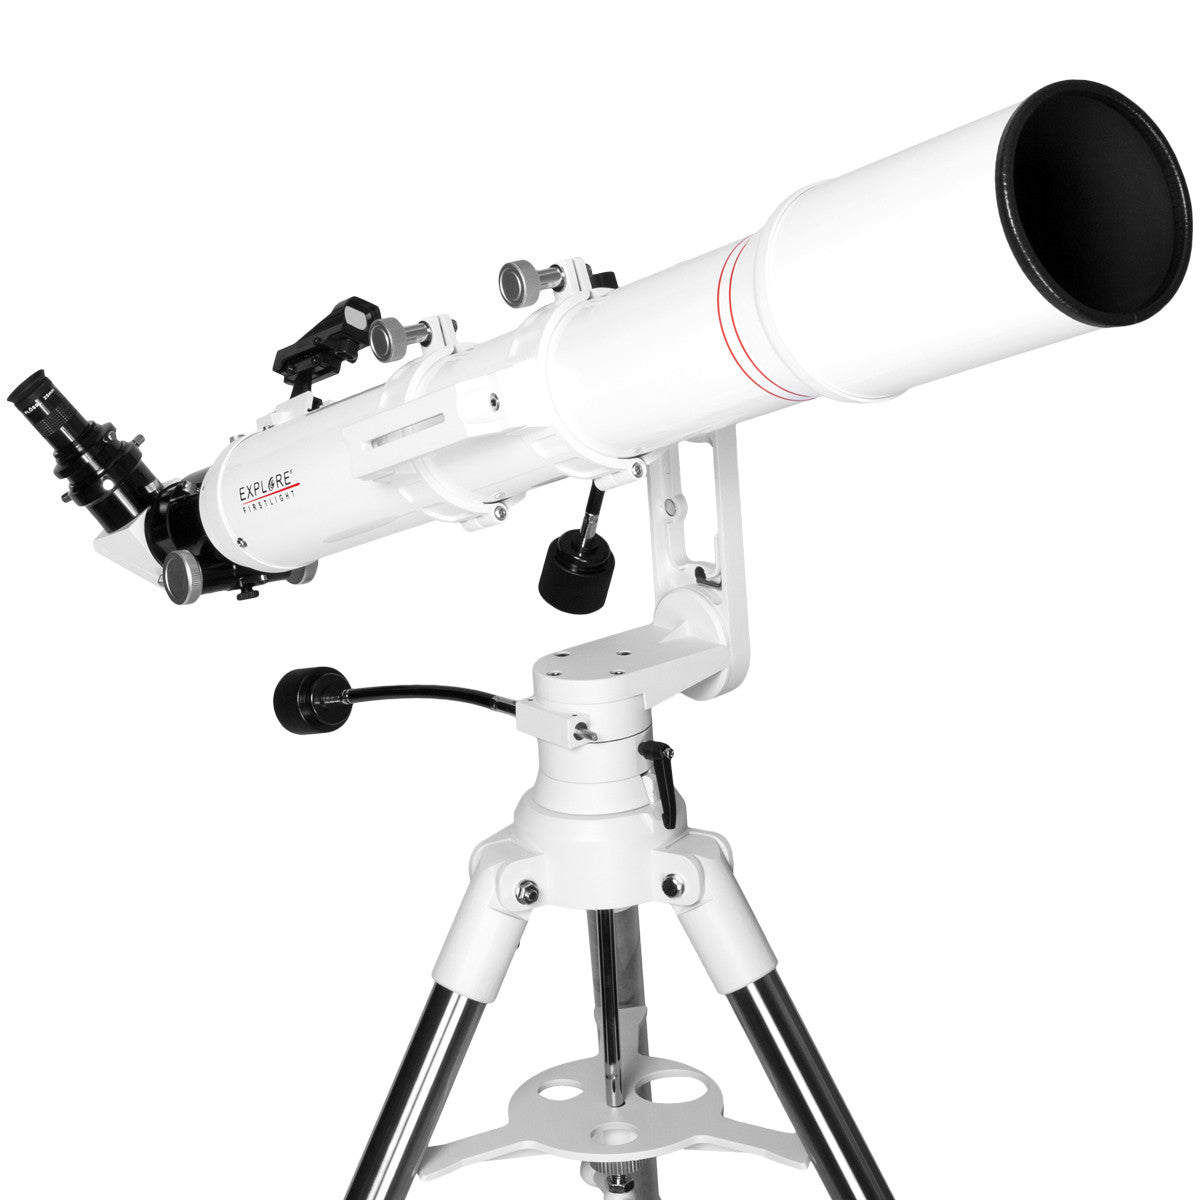 Explore Scientific FirstLight 102mm Doublet Refractor Telescope with Twilight I Mount - FL-AR1021000MAZ01